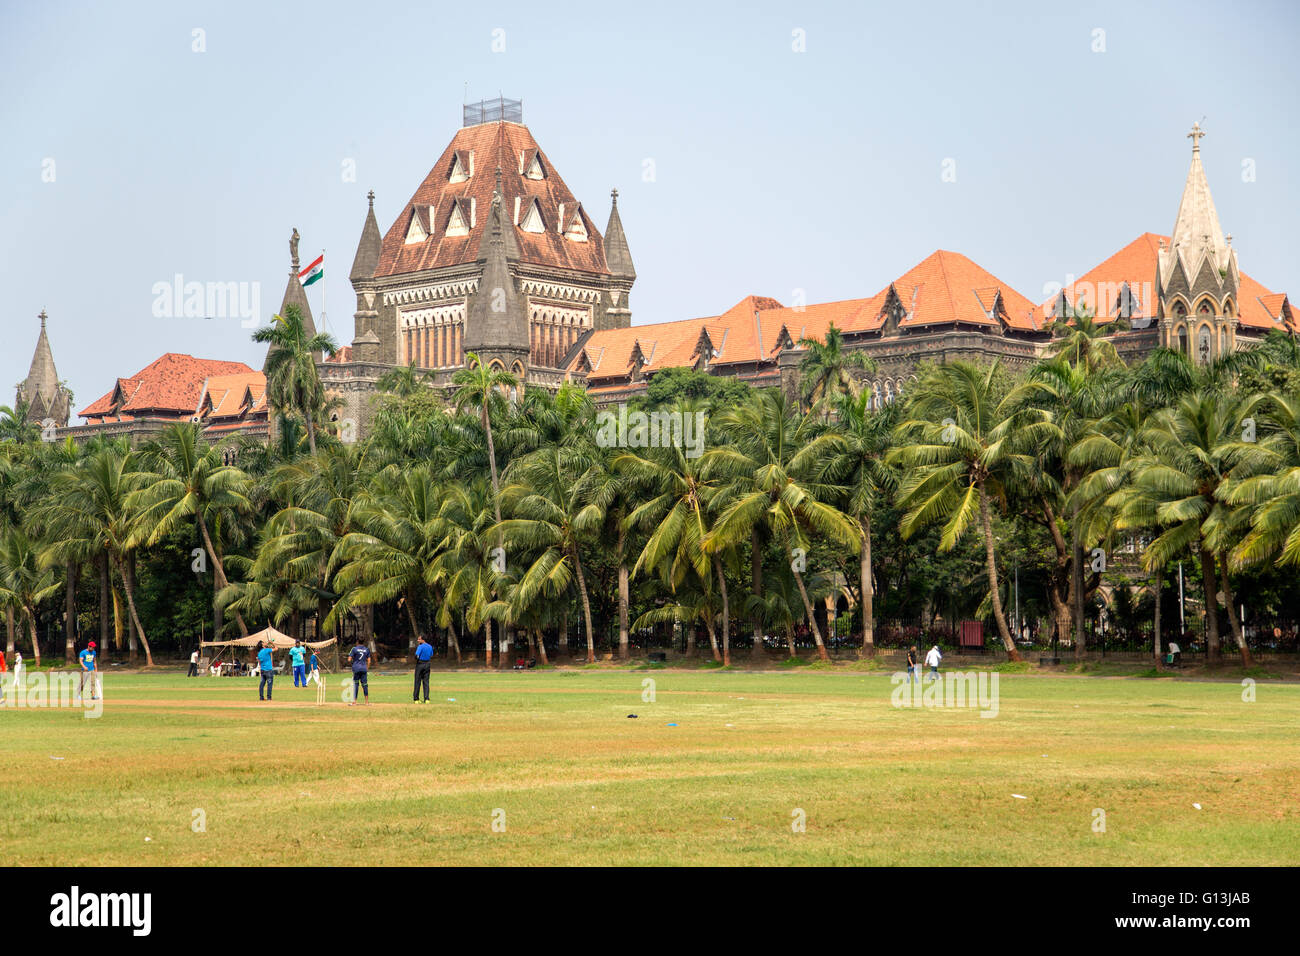 MUMBAI, Indien - 10. Oktober 2015: Menschen spielen Cricket im Central Park in Mumbai, Indien. Kricket ist der populärste sport Stockfoto